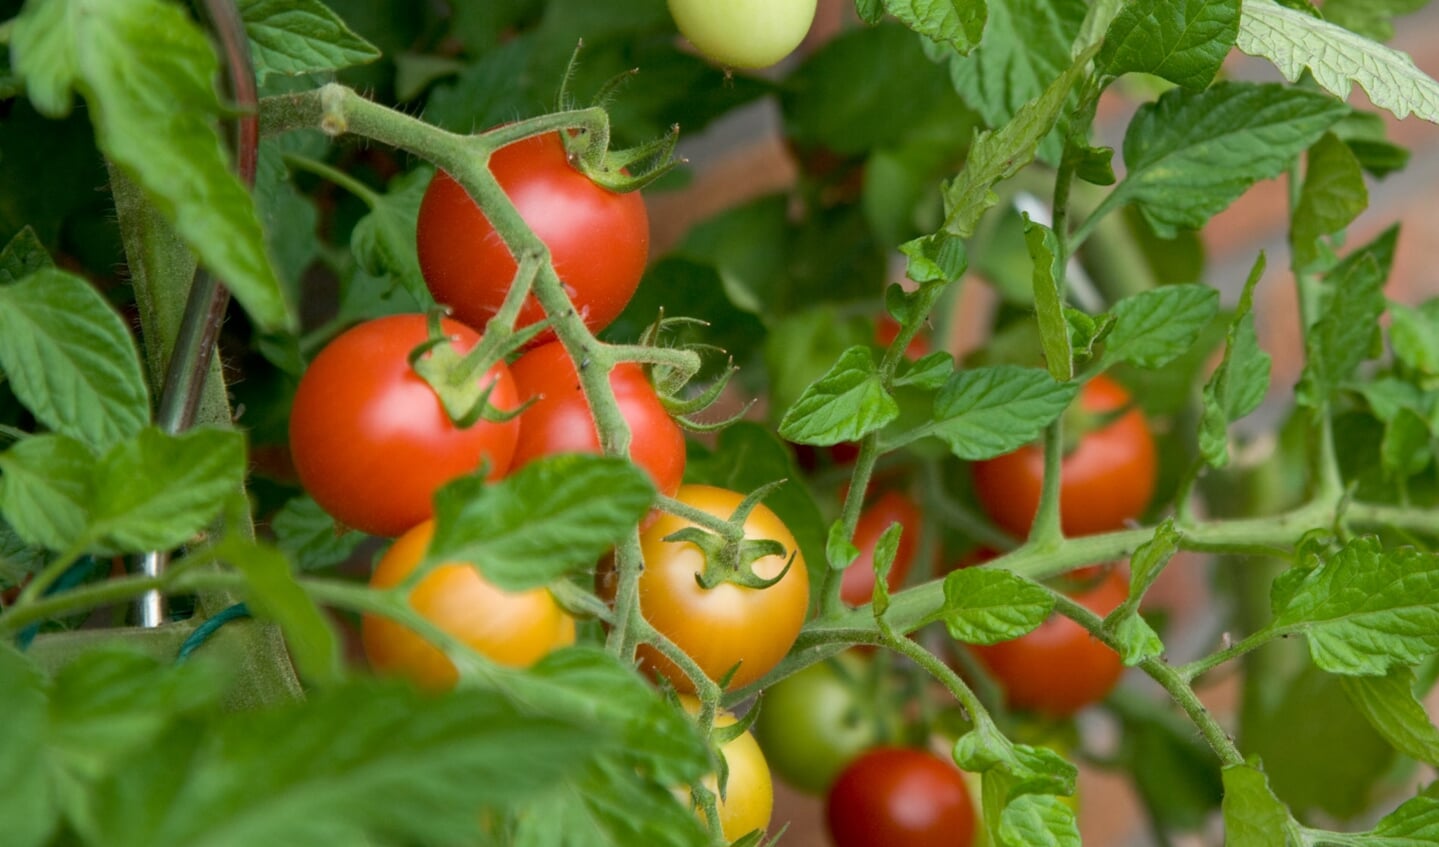 Een tomaatje smaakt altijd lekker en is supergezond!